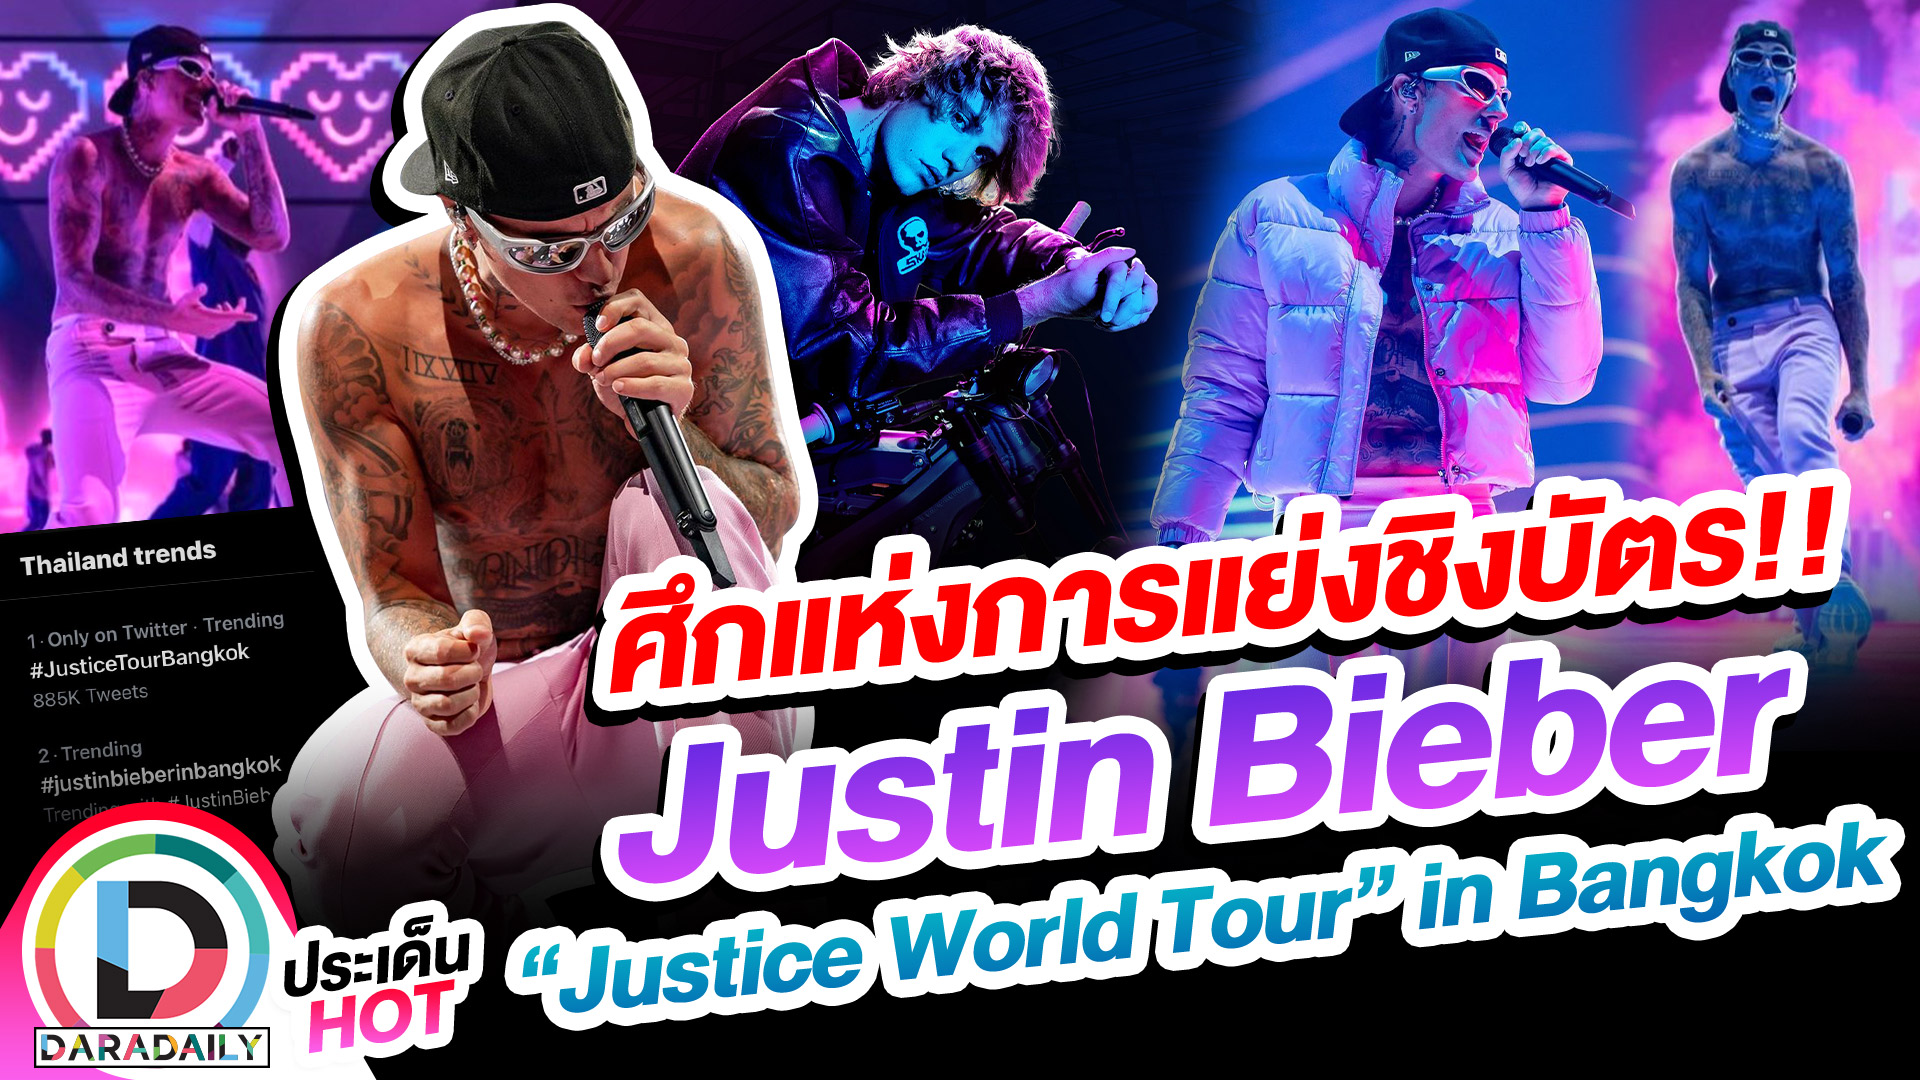 ศึกแห่งการแย่งชิงบัตร!! Justin Bieber “Justice World Tour” in Bangkok